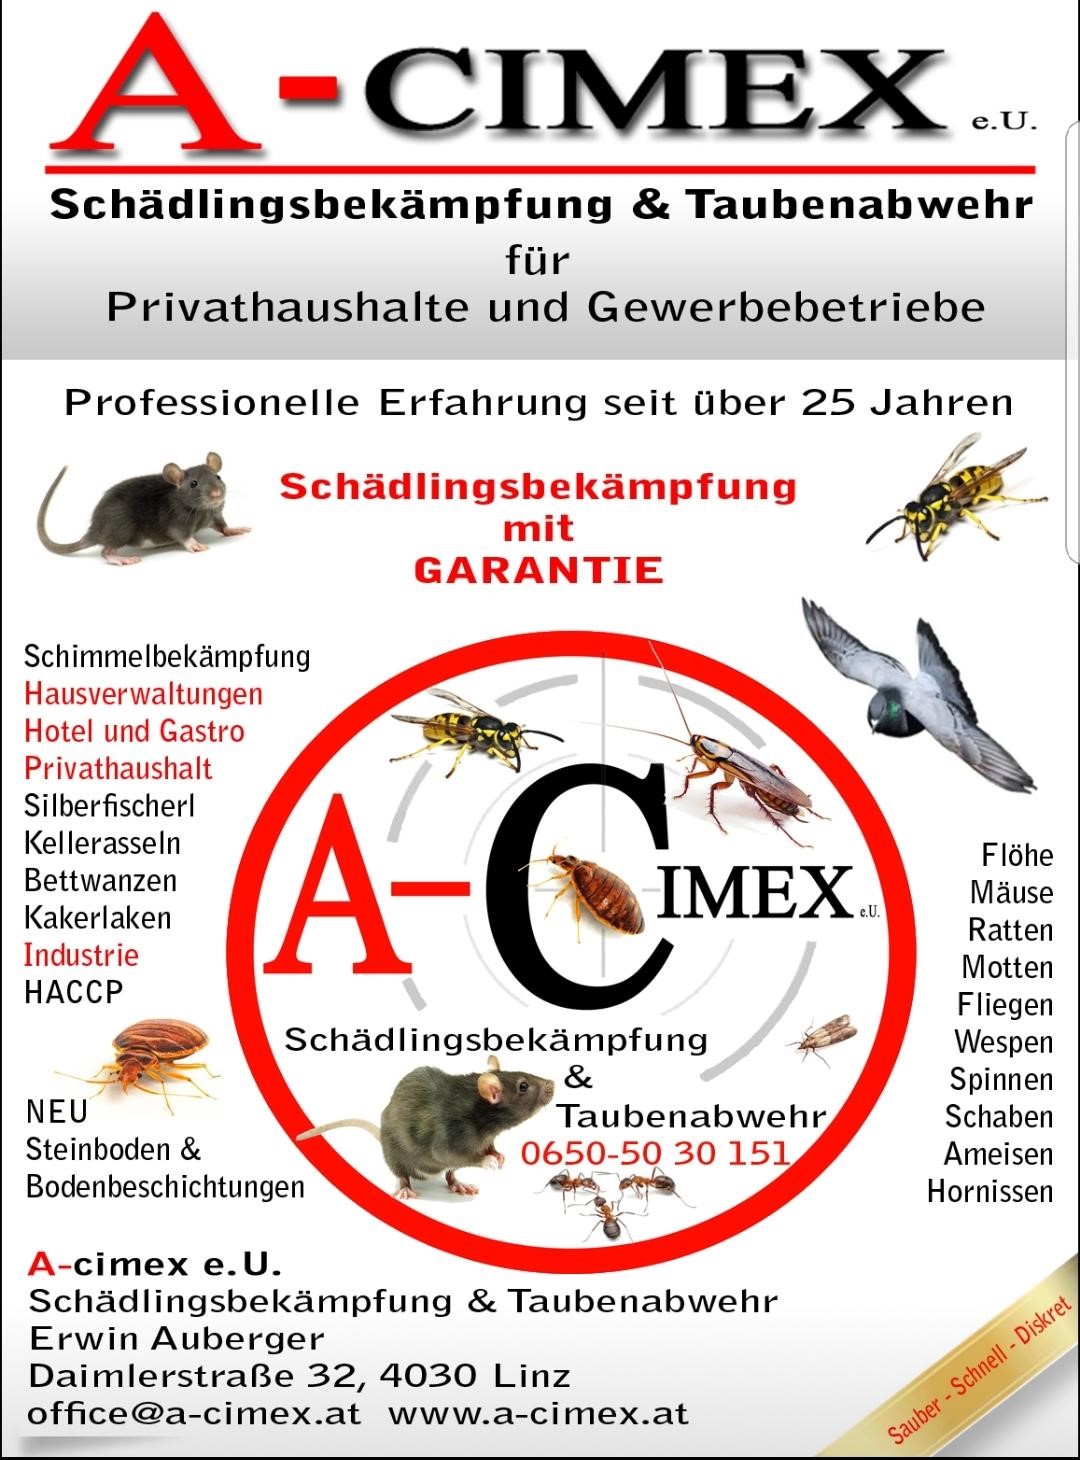 Bilder A-Cimex GmbH Schädlingsbekämpfung & Taubenabwehr